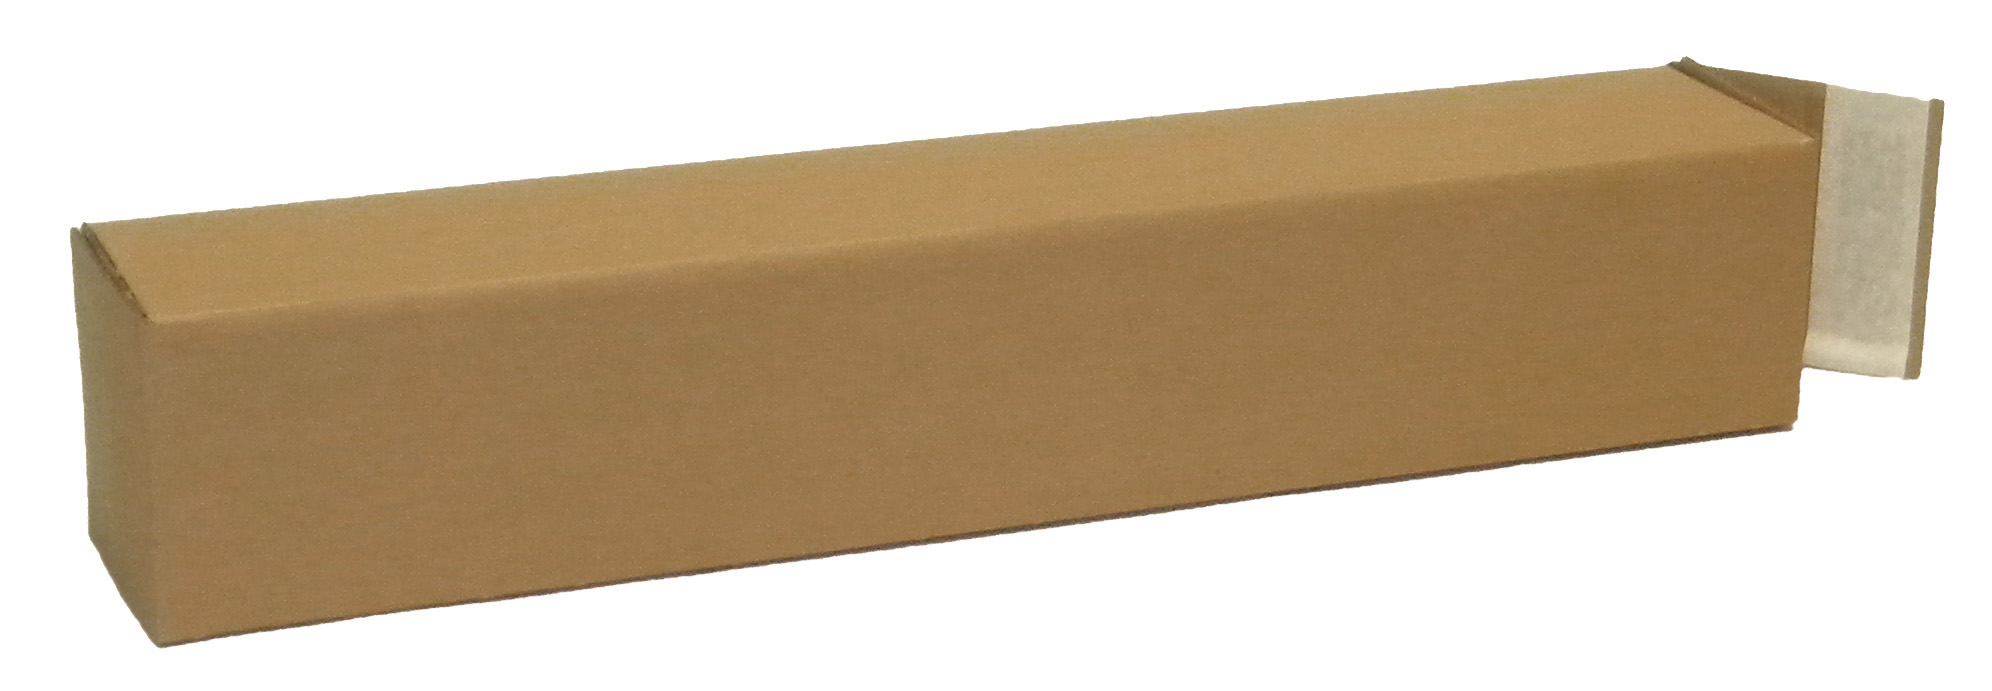 Karton 1-wellig, 108x108x610mm,A1, Qualität 1.20 B, braun, für lange Güter / Inhalt à VE = 50